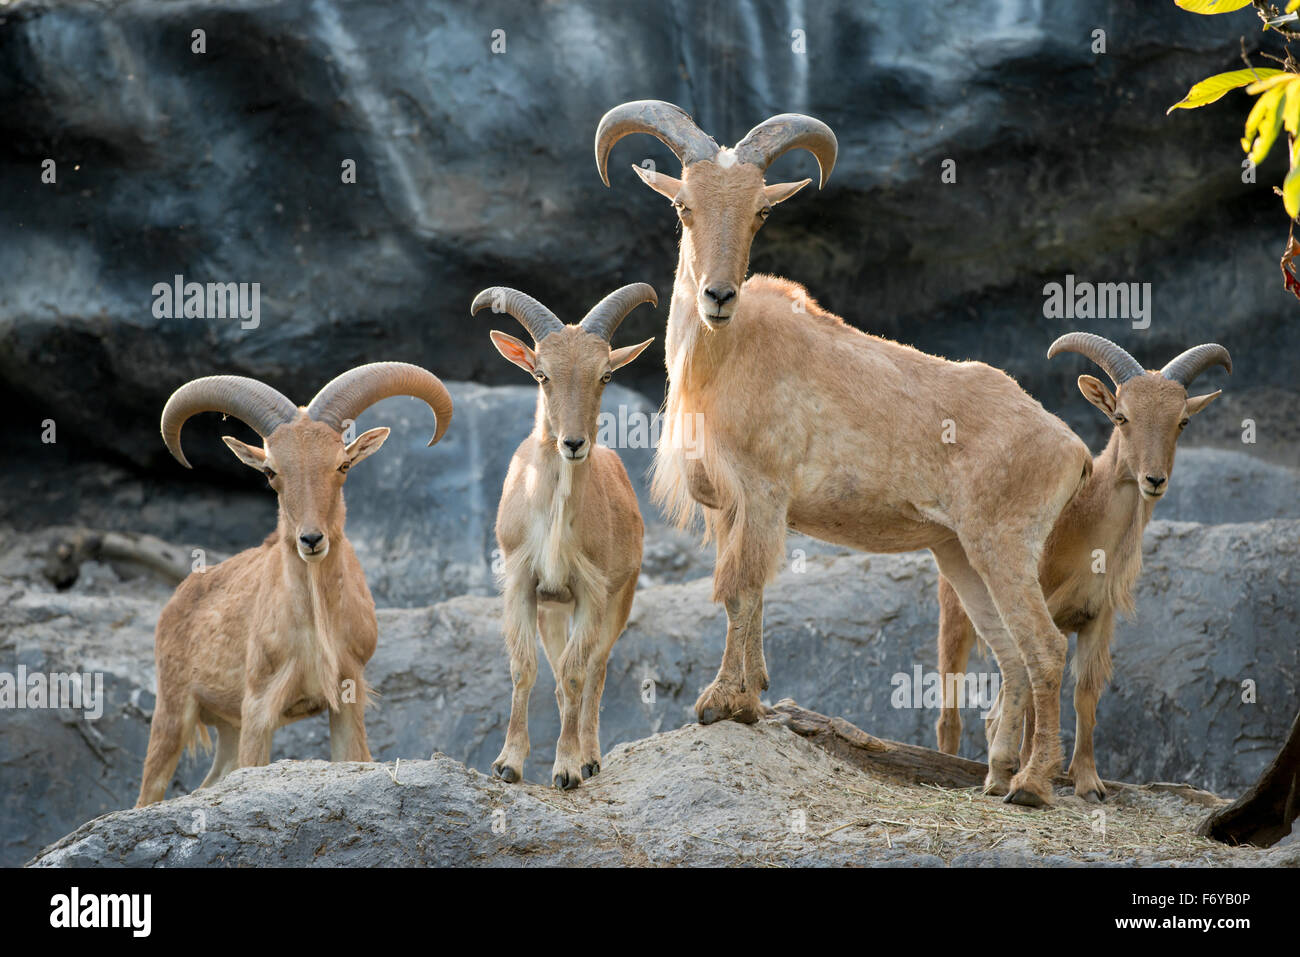 Groupe des moutons de Barbarie ou aoudad (Ammotragus lervia ) Banque D'Images